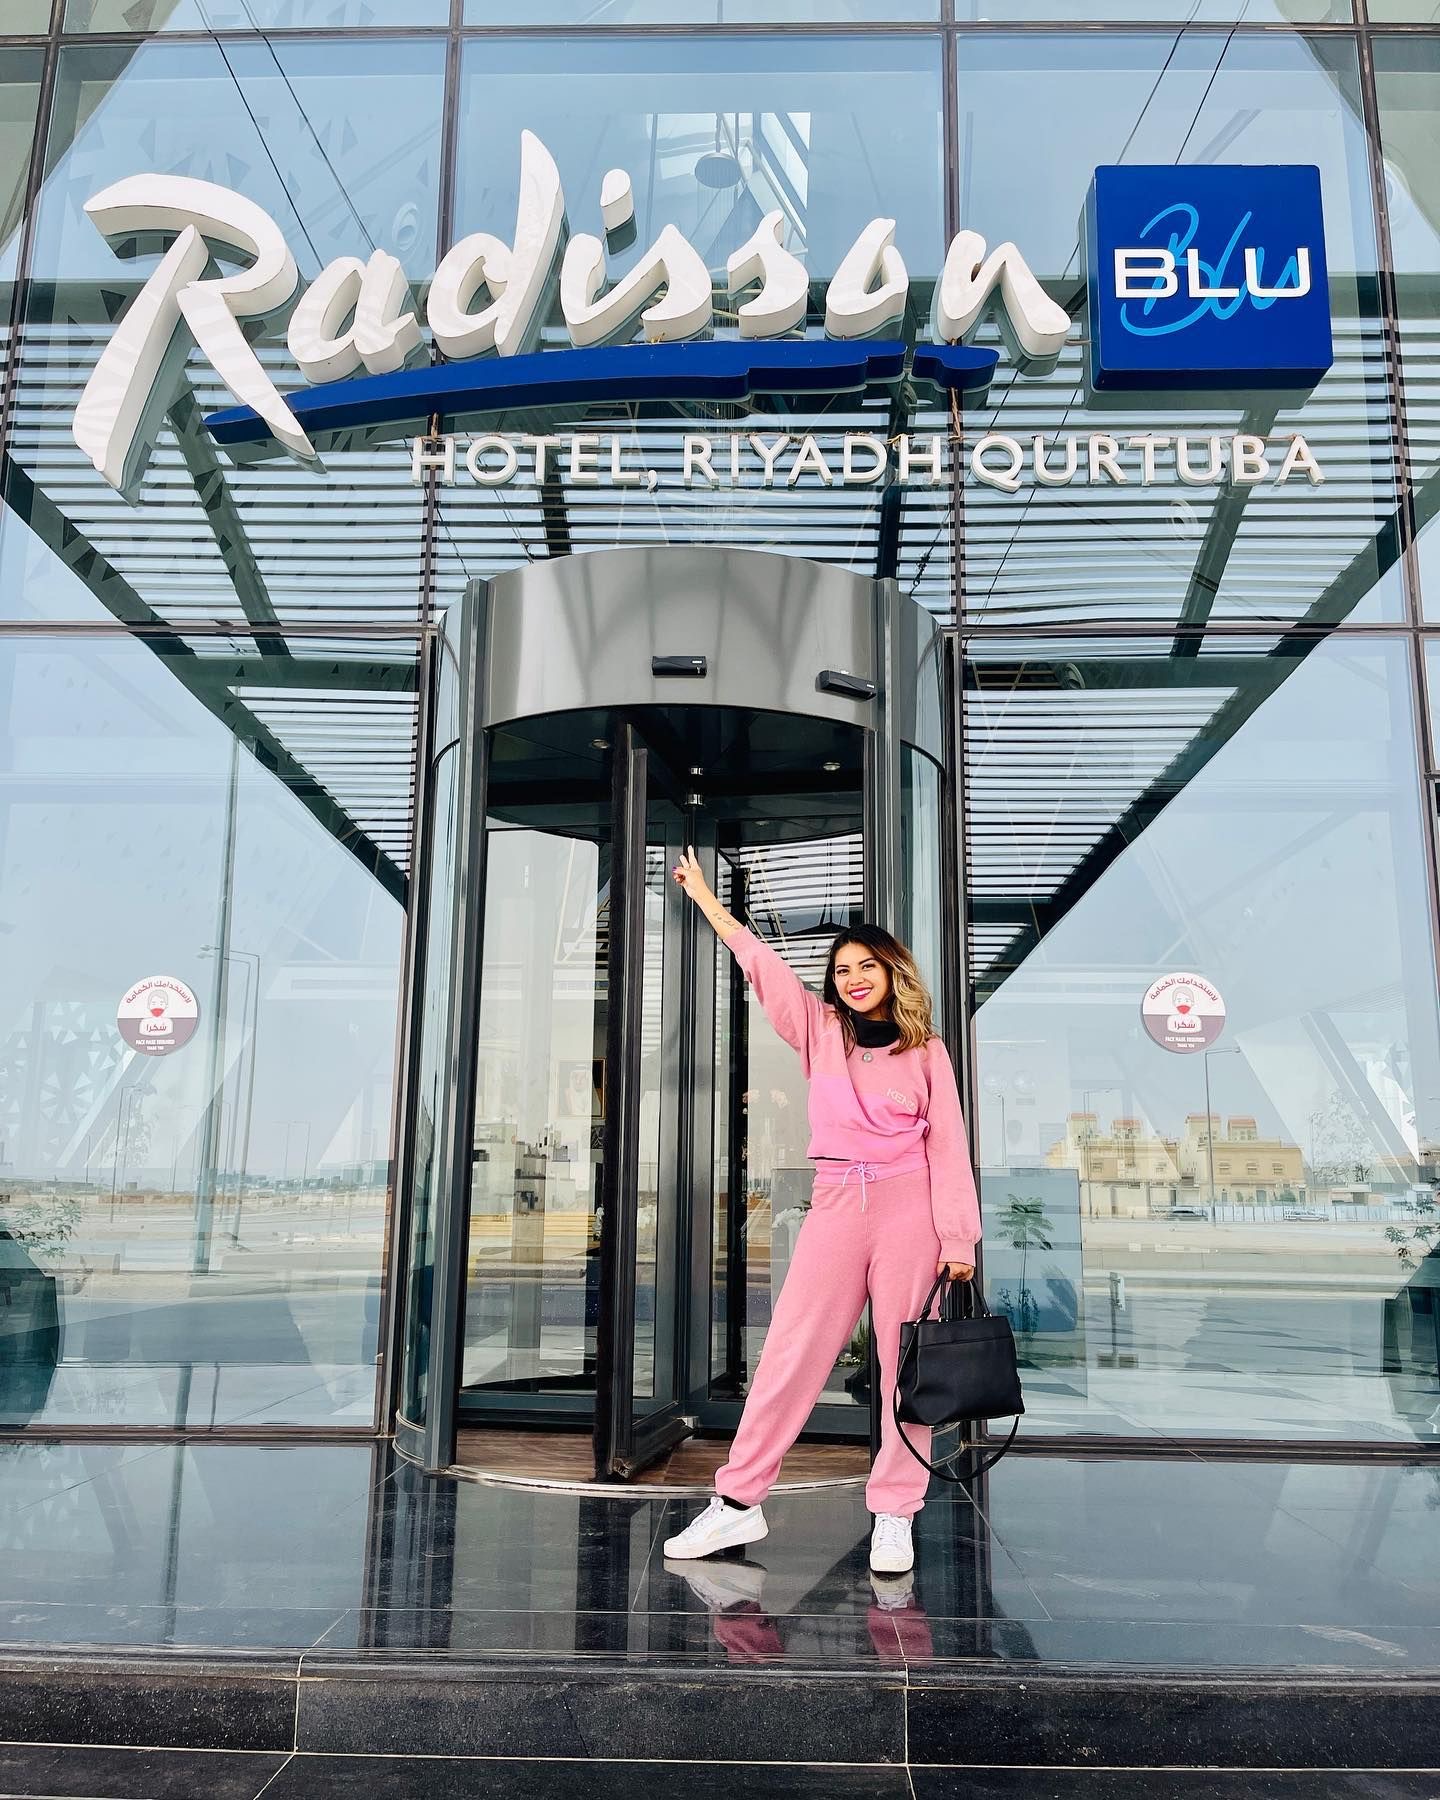 Radisson Blu Hotel, Riyadh Qurtuba Zu Besuch in meinem 171. Land!